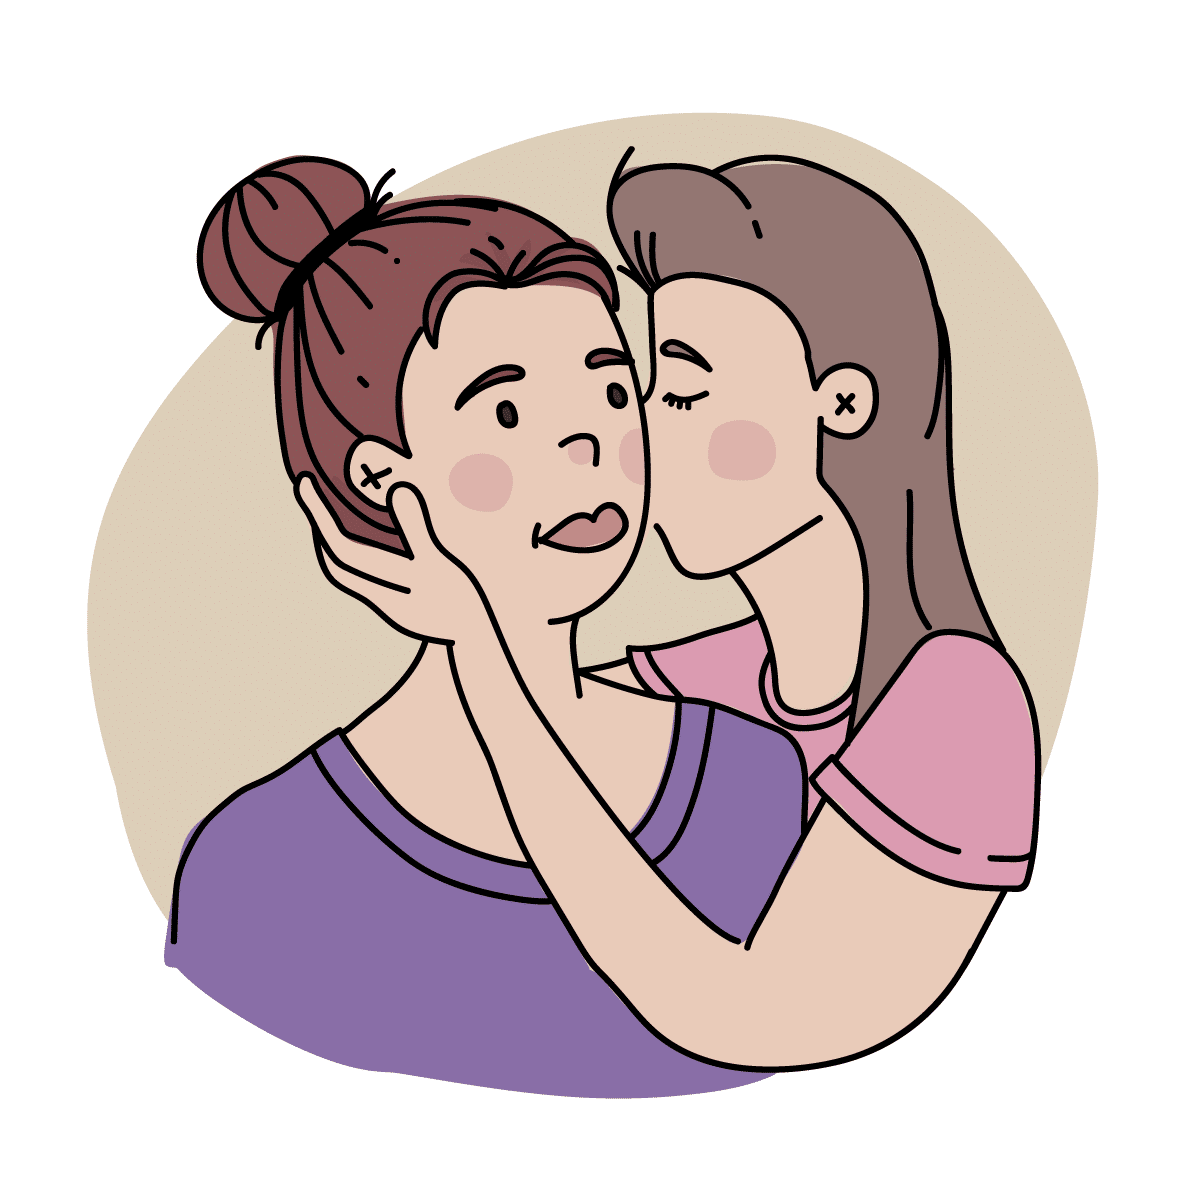 Ilustración: una chica dándole un beso en la mejilla a otra